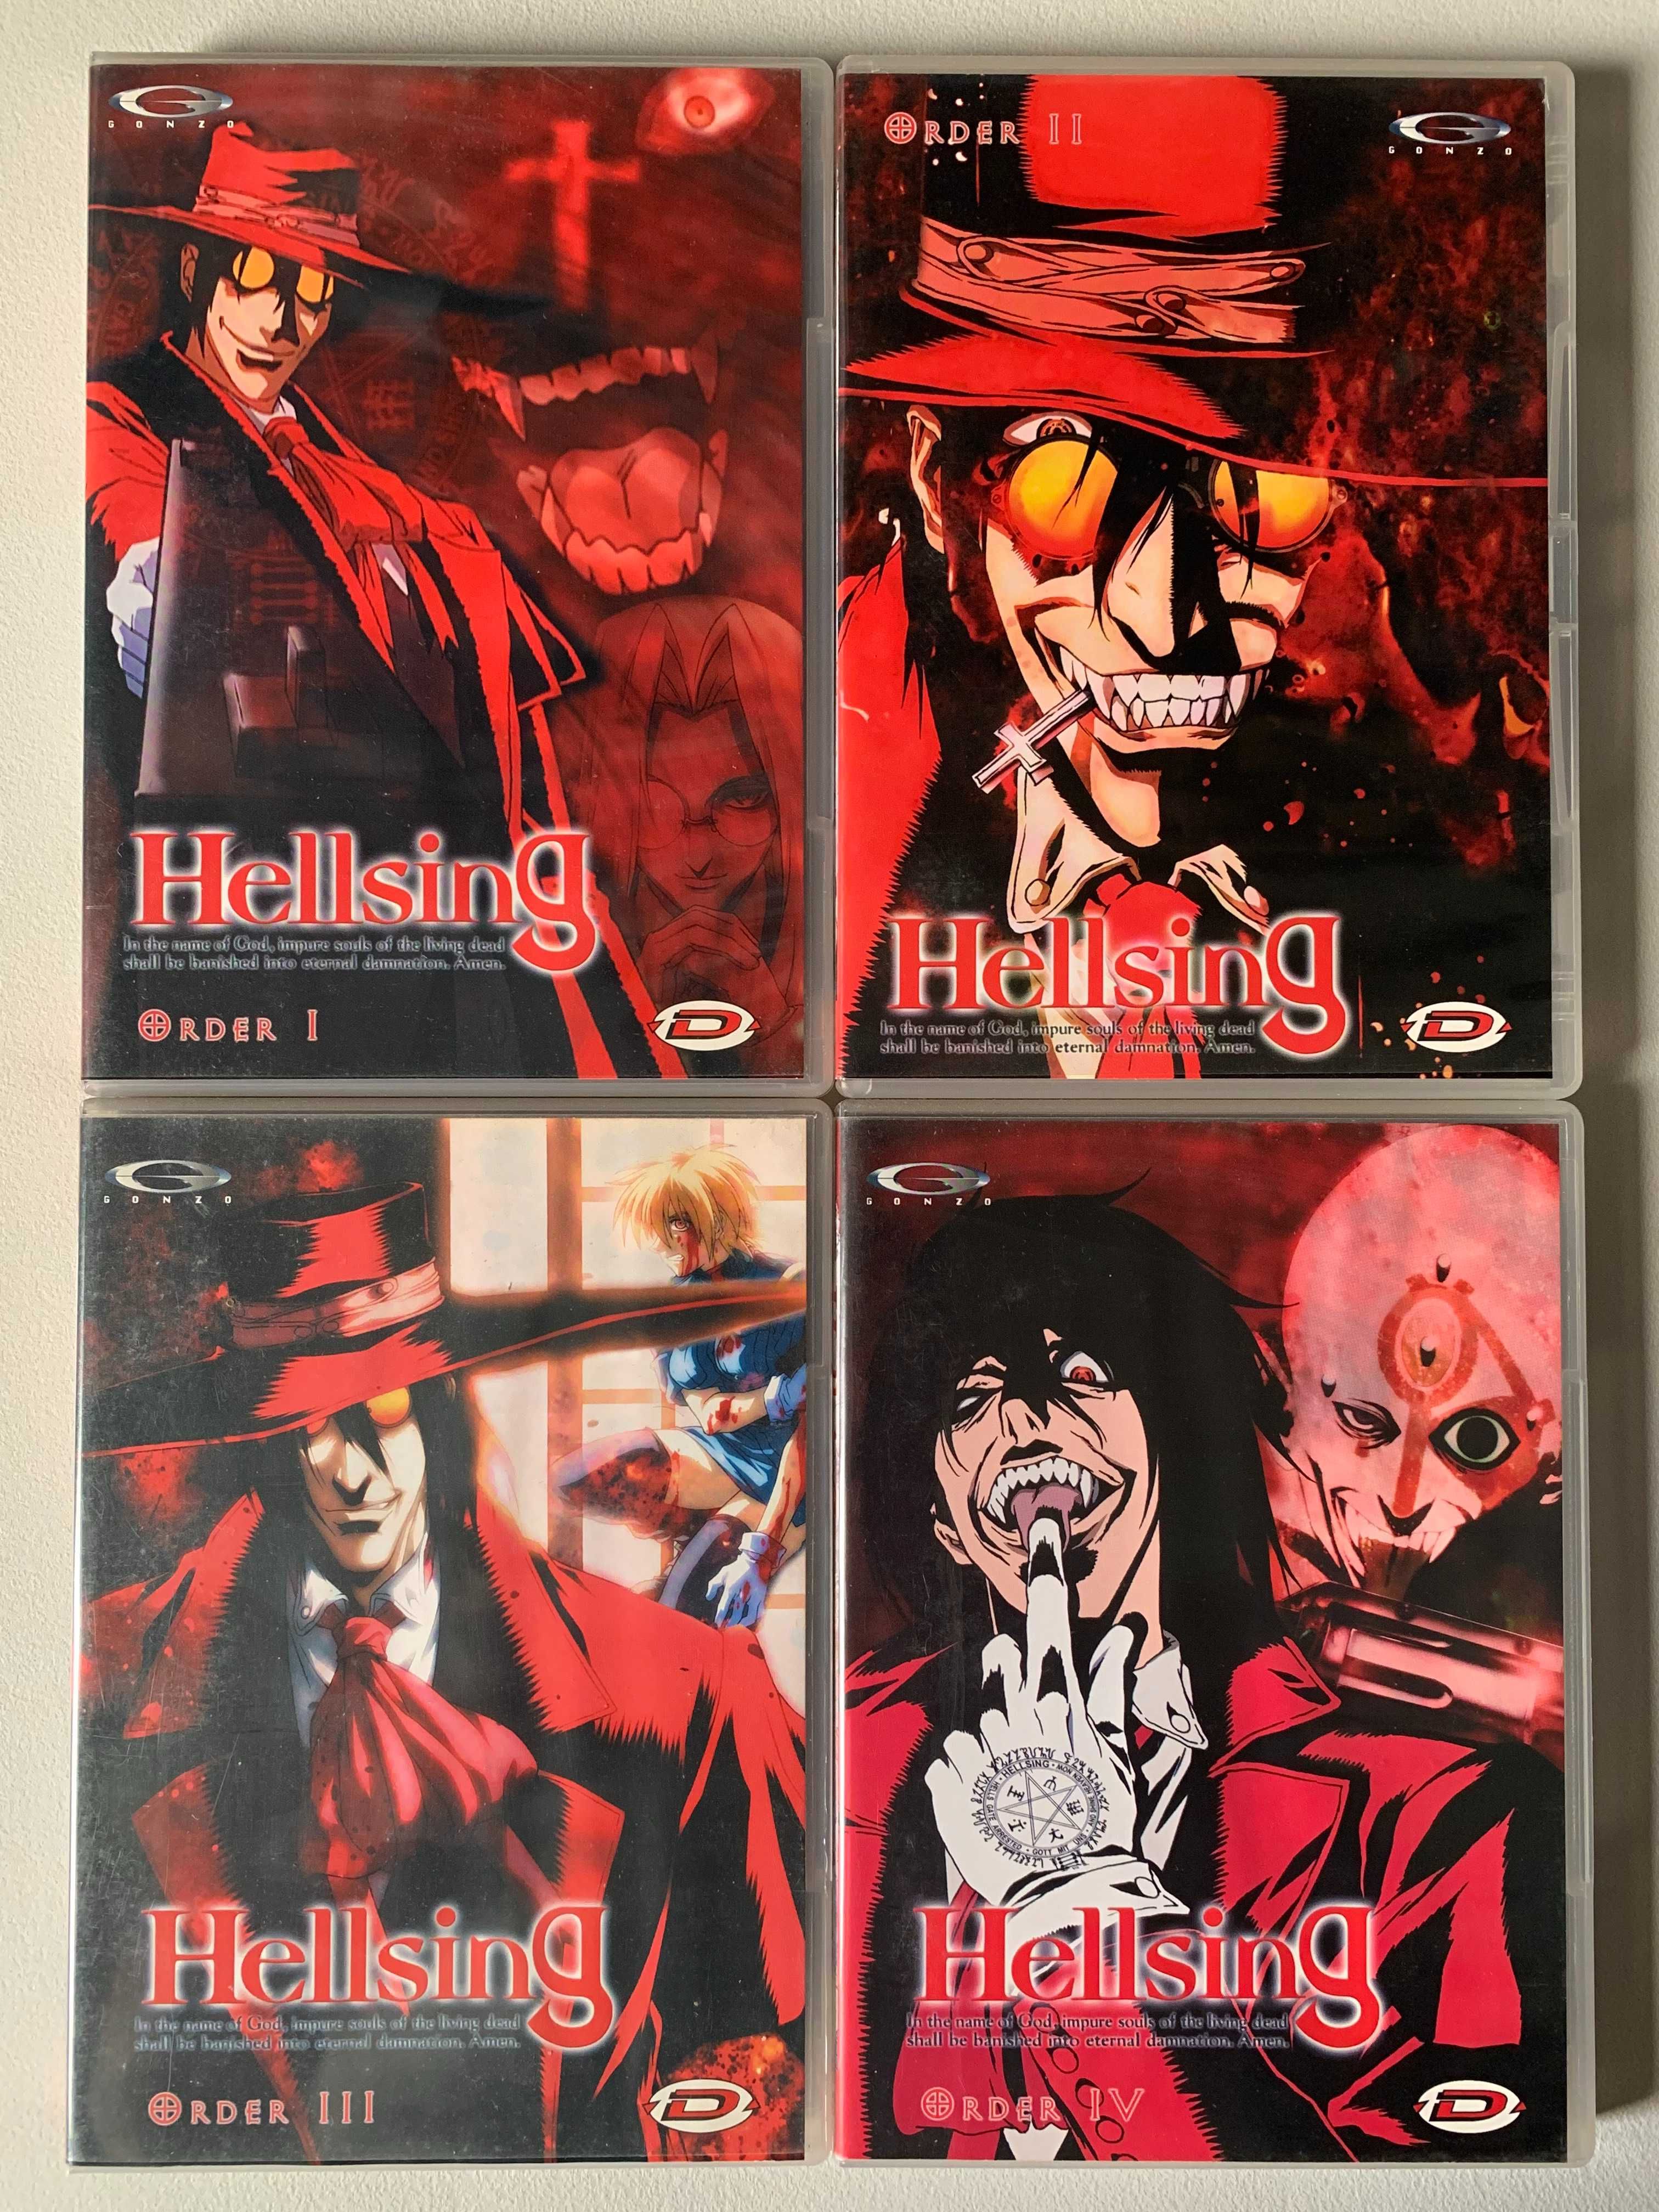 [DVD] Hellsing - Série Completa (Episódios 1 a 13)